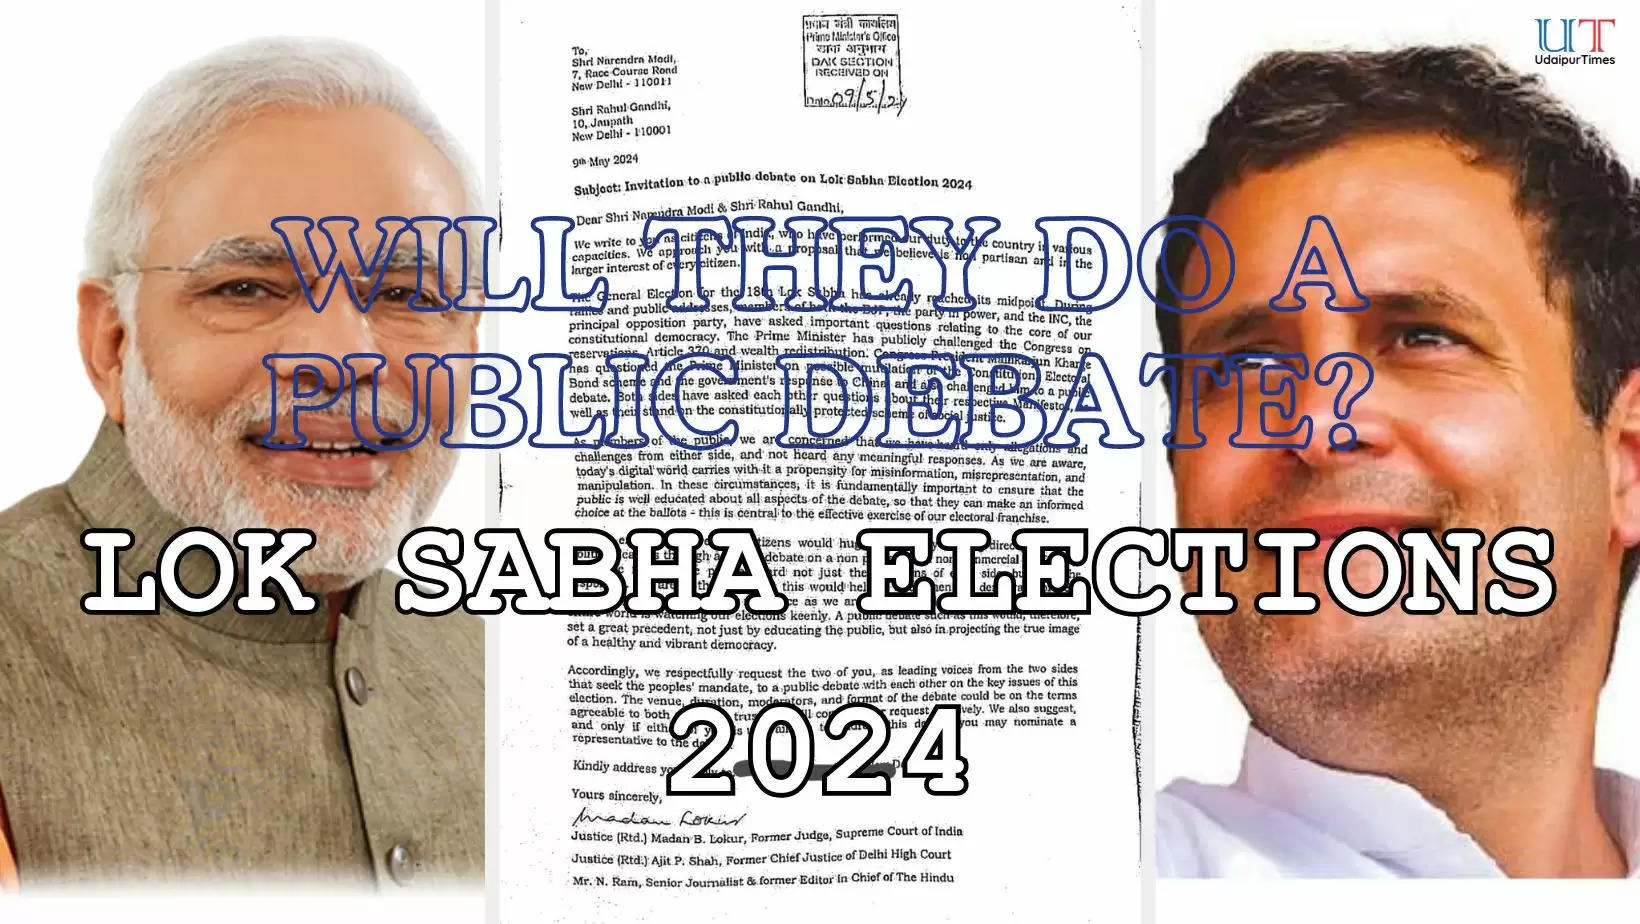 Public Debate Narendra Modi Rahul Gandhi Lok Sabha Elections 2024